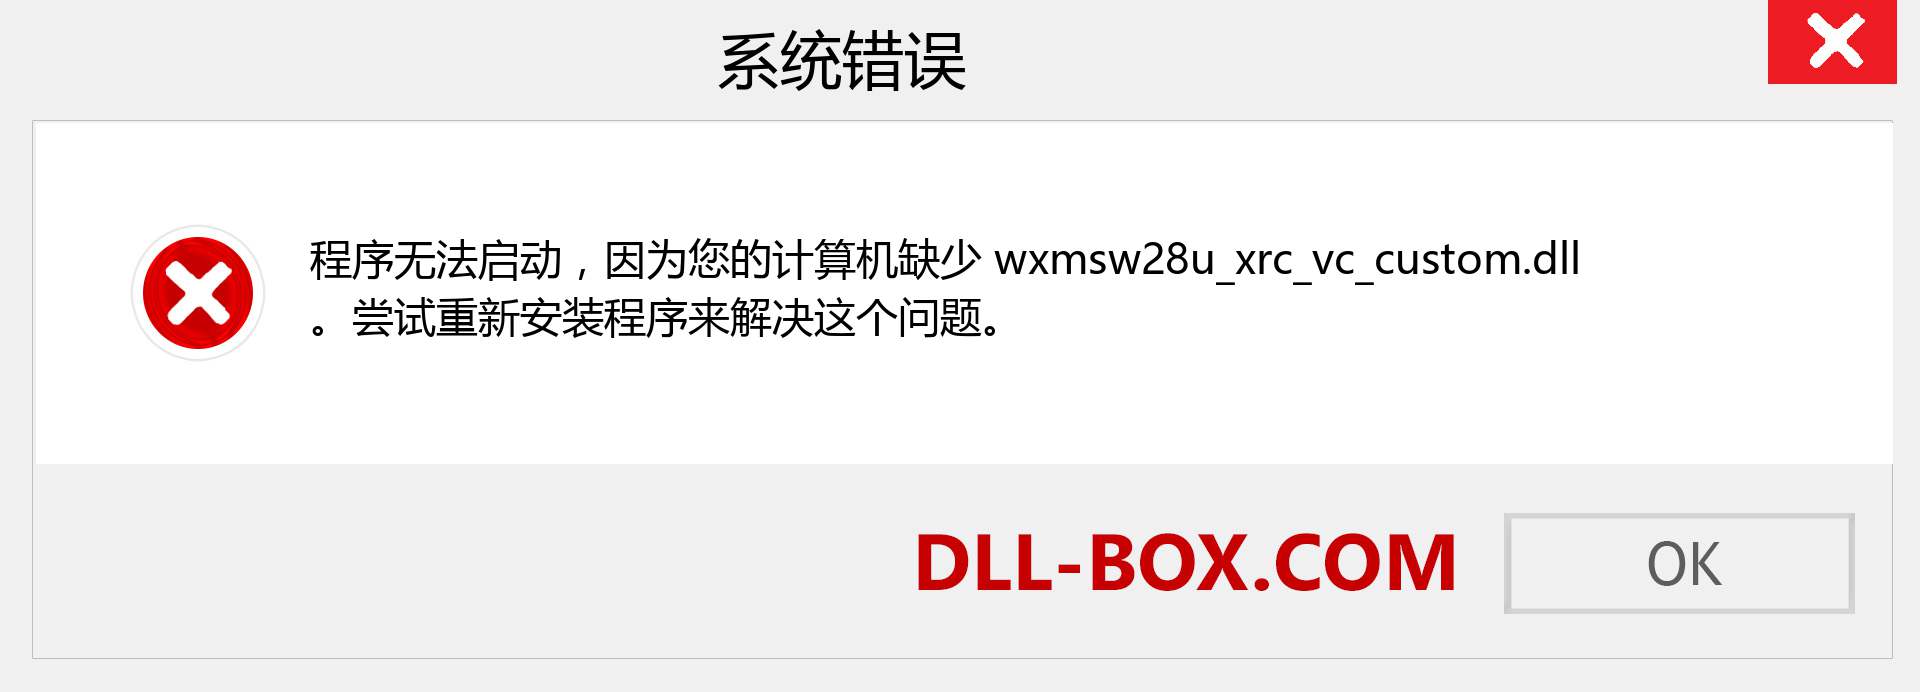 wxmsw28u_xrc_vc_custom.dll 文件丢失？。 适用于 Windows 7、8、10 的下载 - 修复 Windows、照片、图像上的 wxmsw28u_xrc_vc_custom dll 丢失错误